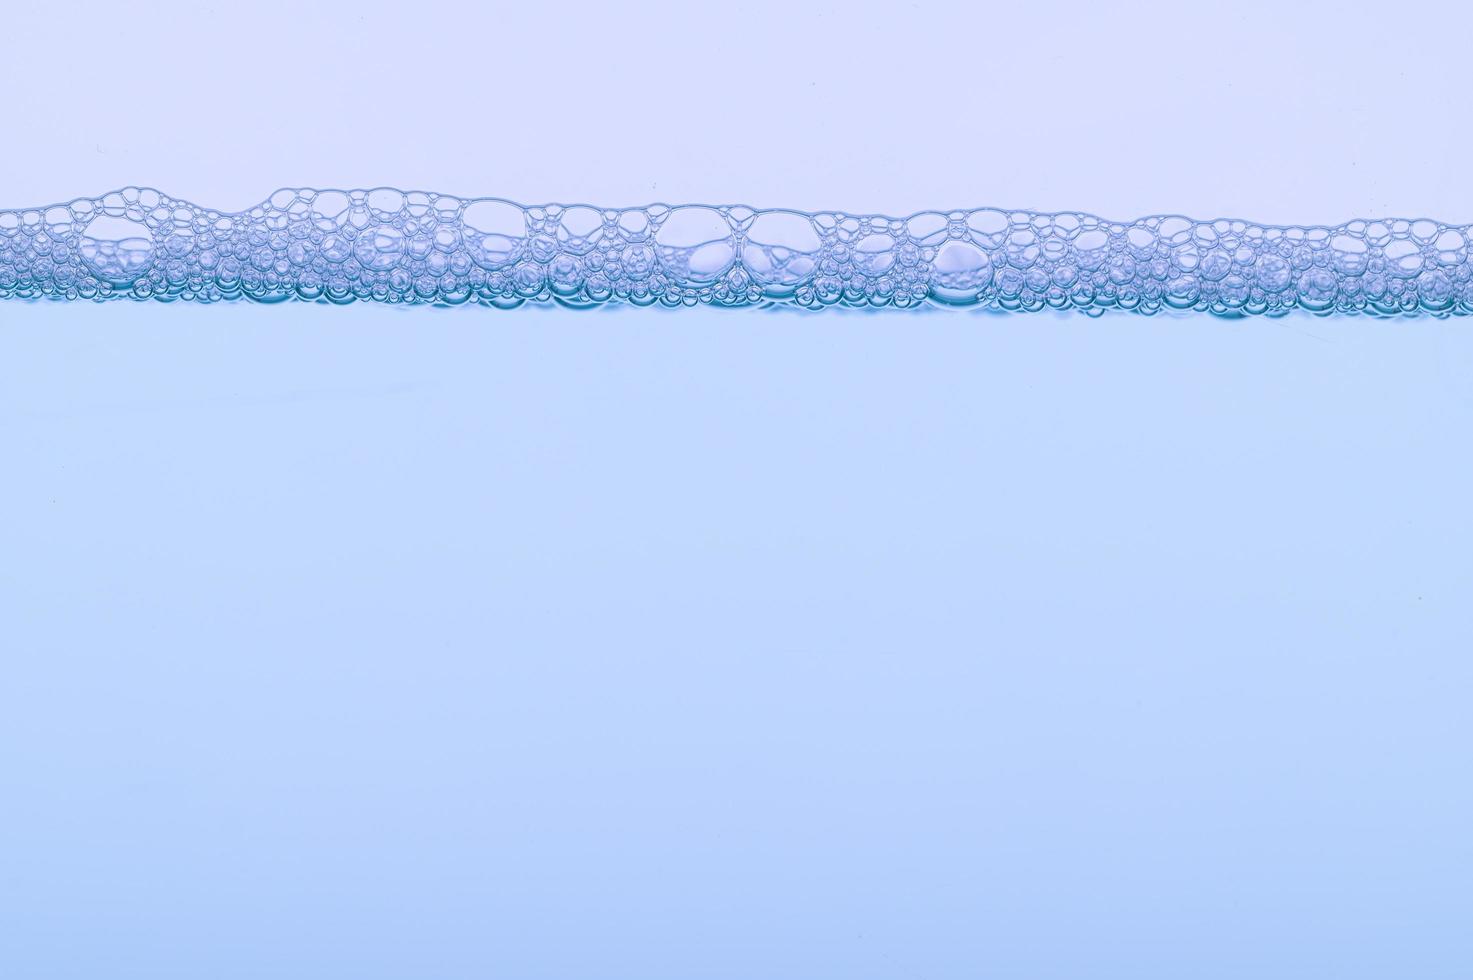 bolle sulla superficie dell'acqua foto